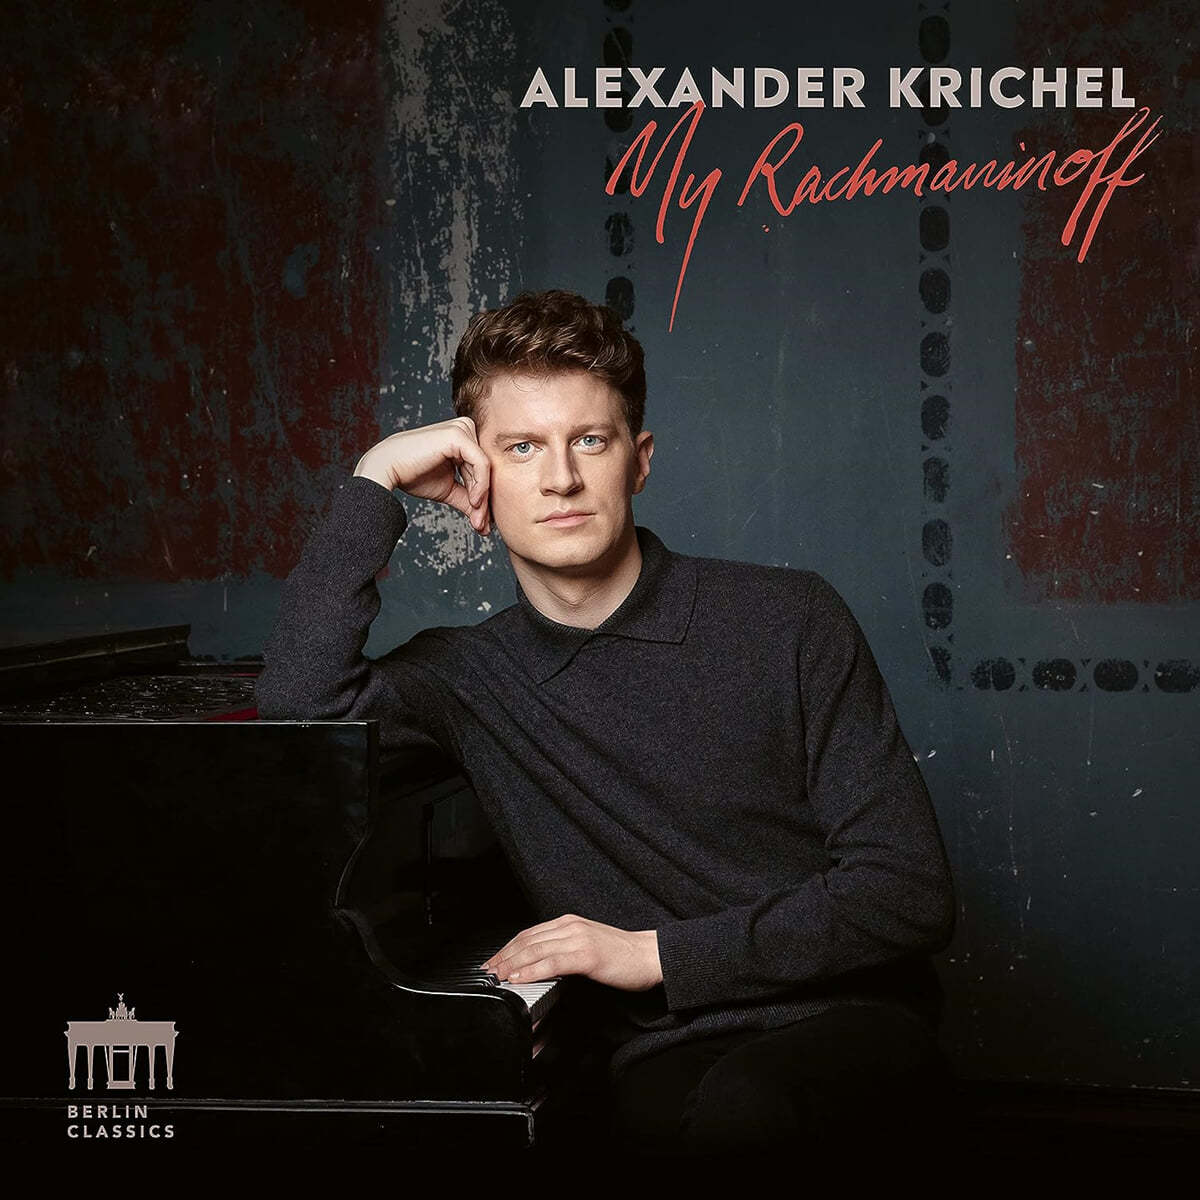 Alexander Krichel 라흐마니노프: 코렐리 변주곡, 회화적 연습곡, 프렐류드 (My Rachmaninoff) [2LP]